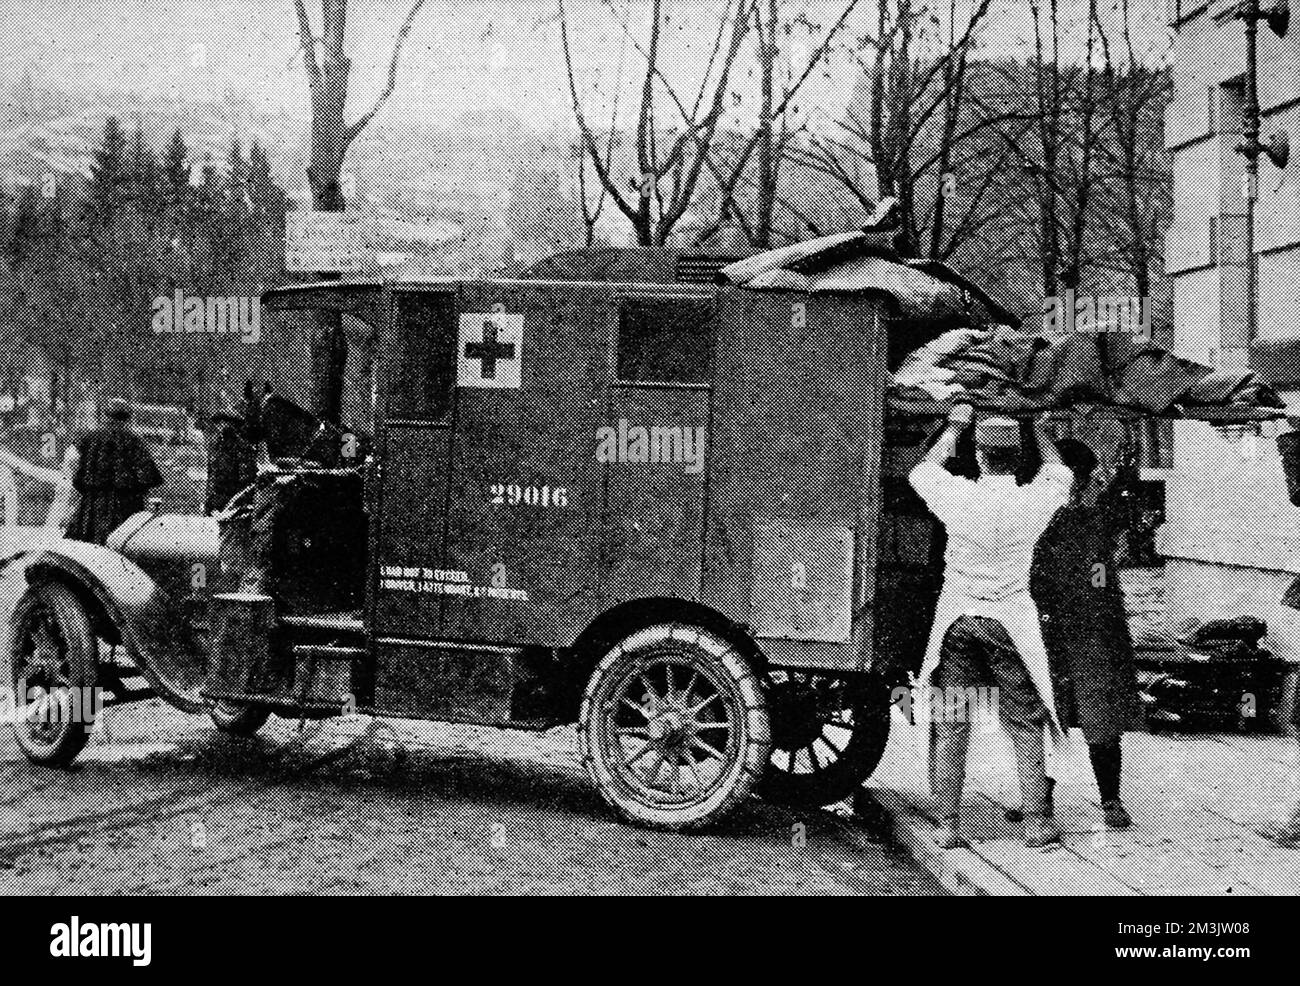 Riportare un soldato francese ferito all'ospedale di base. Il corpo medico della Croce Rossa e dell'Esercito si è impegnato nel pericoloso compito di assistenza medica in prima linea. Data: 1916 Foto Stock